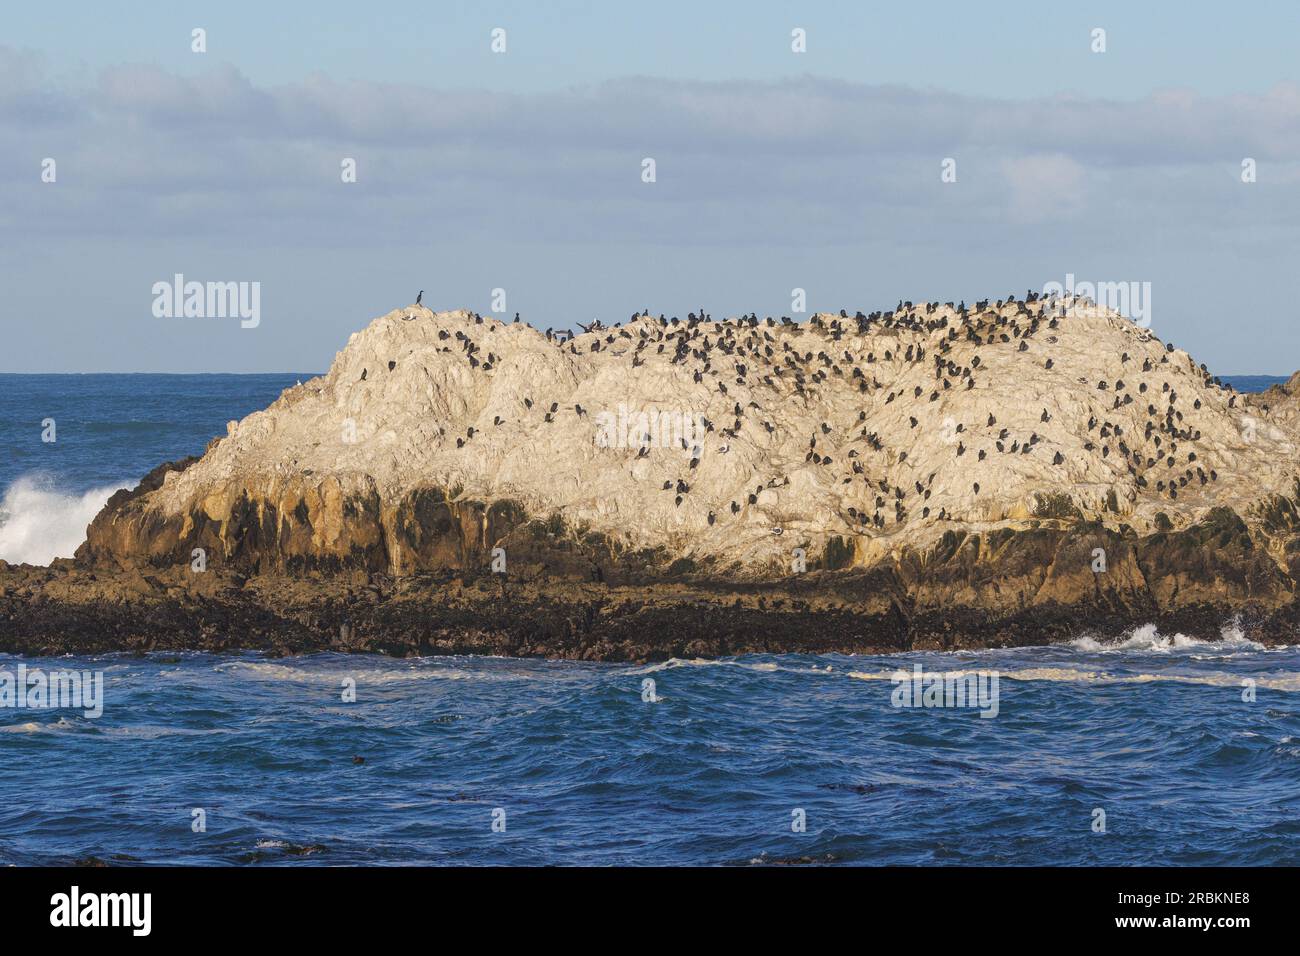 Cormoran de brandt (Phalacrocorax penicillatus, Urile penicillatus), colonie de reproduction sur un rocher au large de la côte, USA, Californie, Pebble Beach, Monterey Banque D'Images